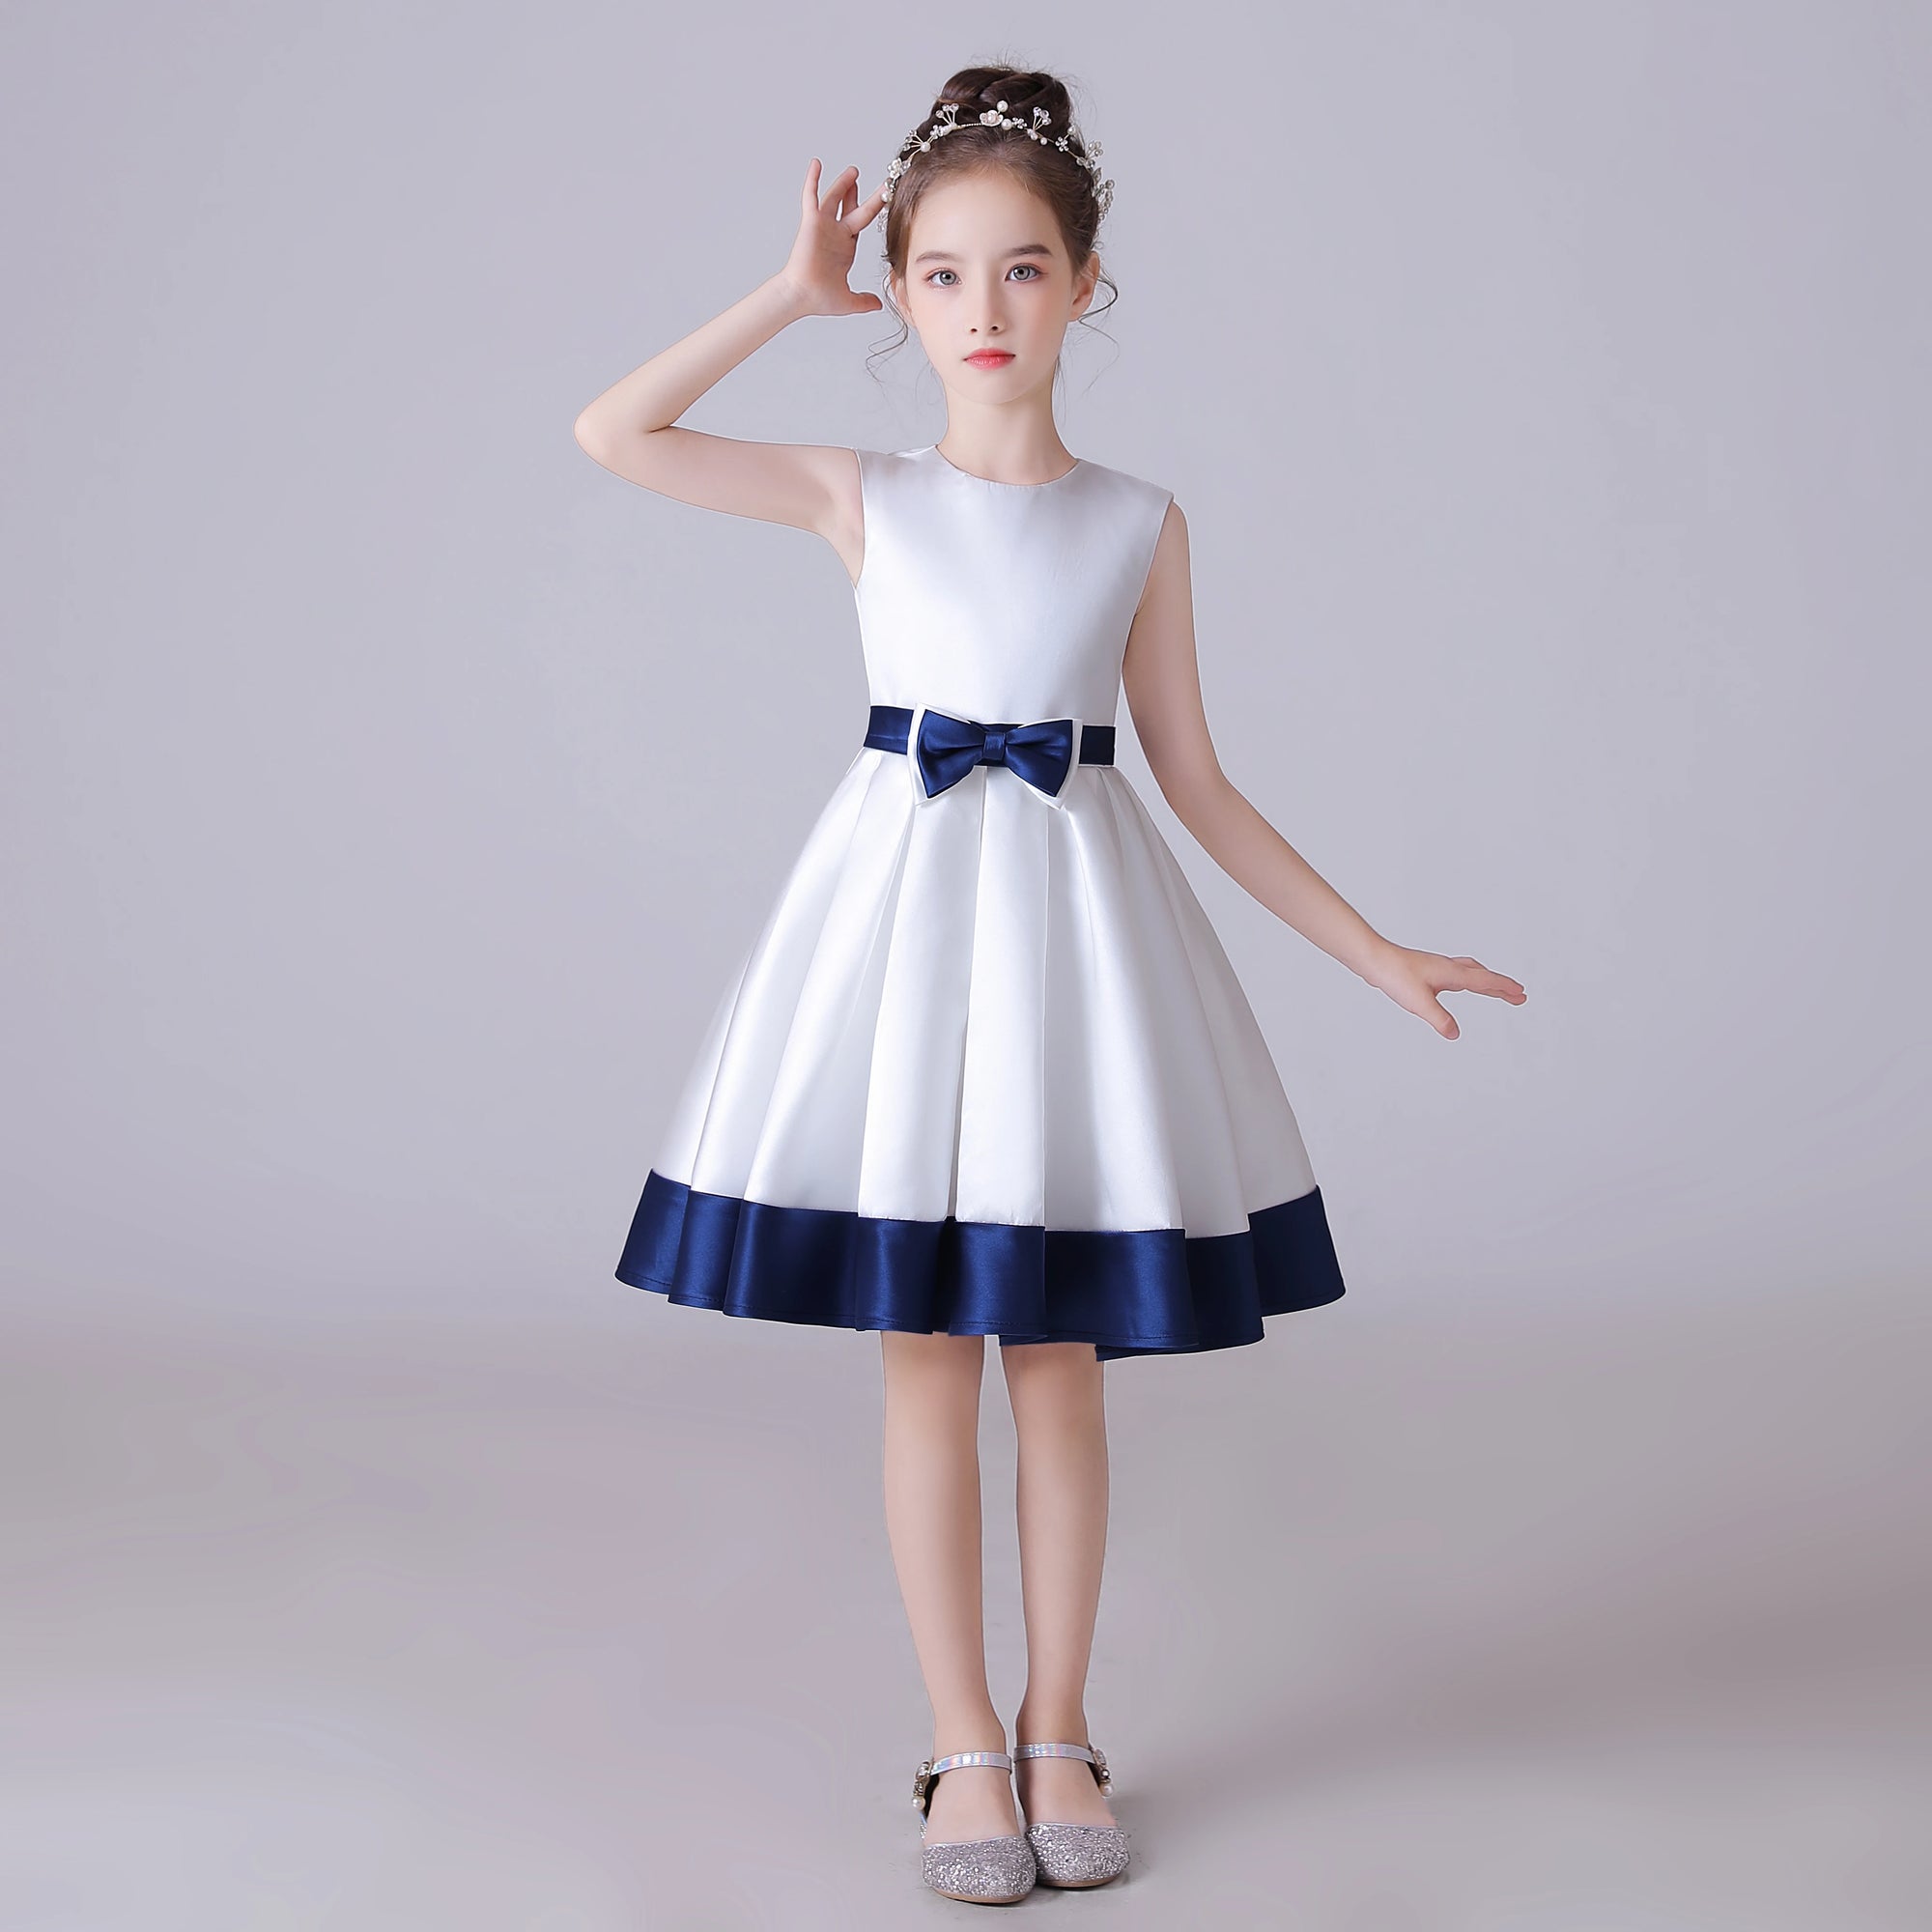 White Short Skirt Girls Dress O-Neck Satin Bow Party Dress